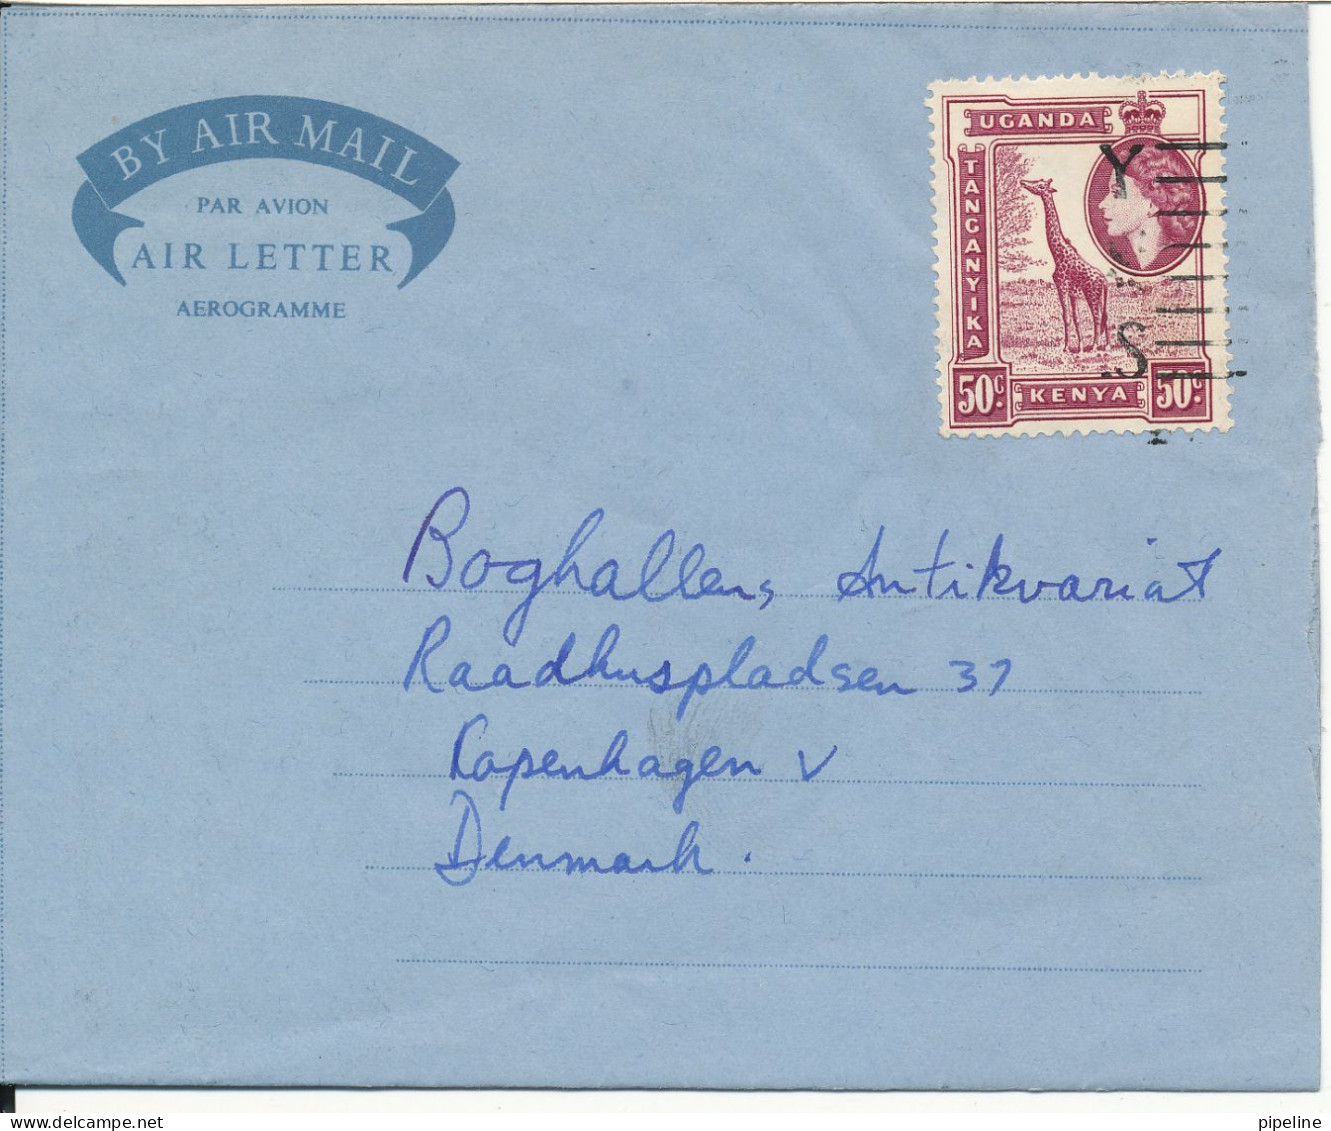 Kenya - Uganda - Tanganyika Aerogramme Sent To Denmark Nairobi 17-12-1956 - Kenya, Ouganda & Tanganyika